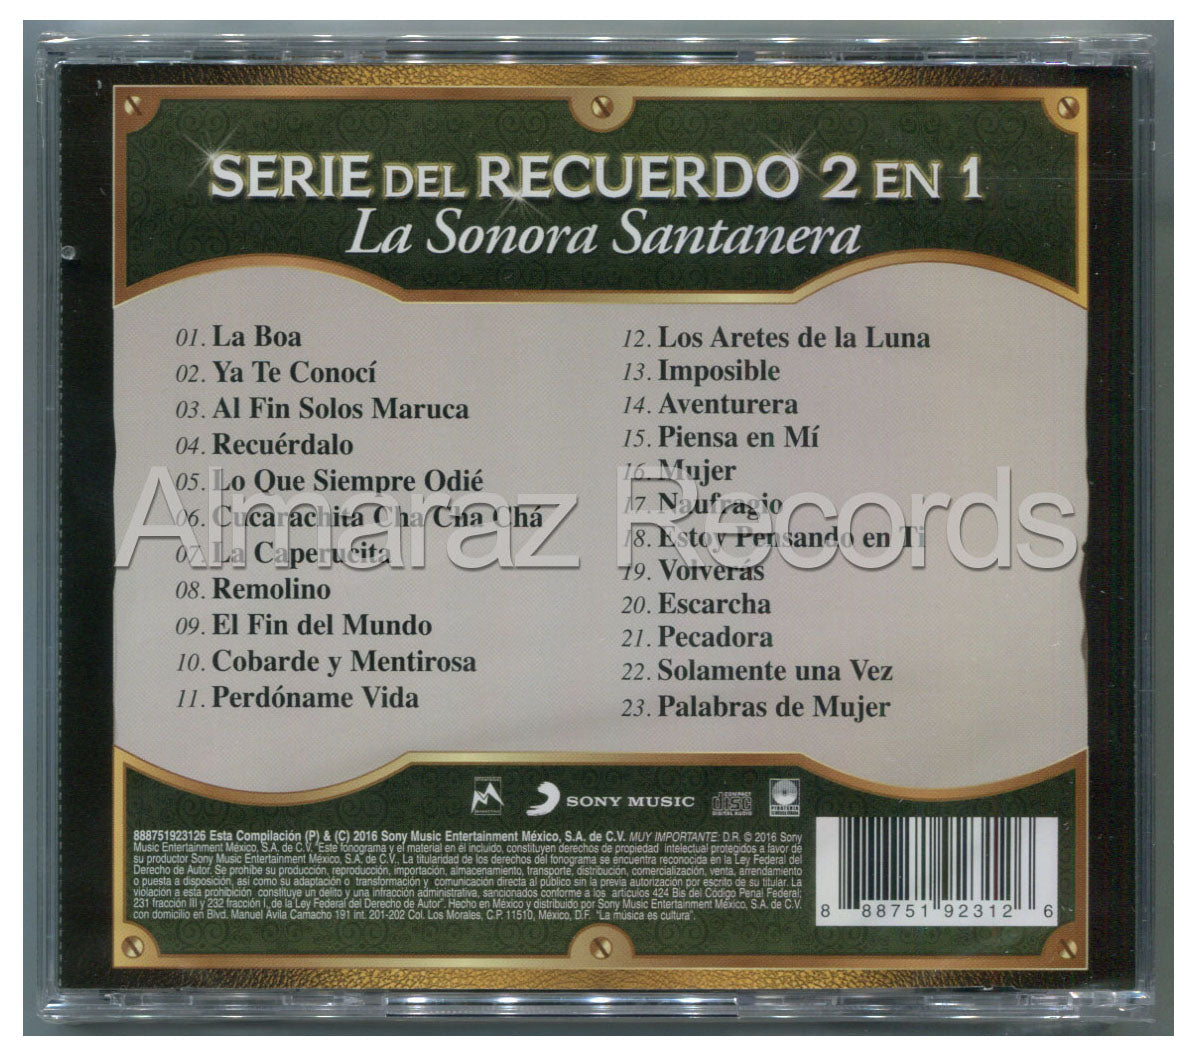 La Sonora Santanera Serie Del Recuerdo 2 En 1 CD - Almaraz Records | Tienda de Discos y Películas
 - 2